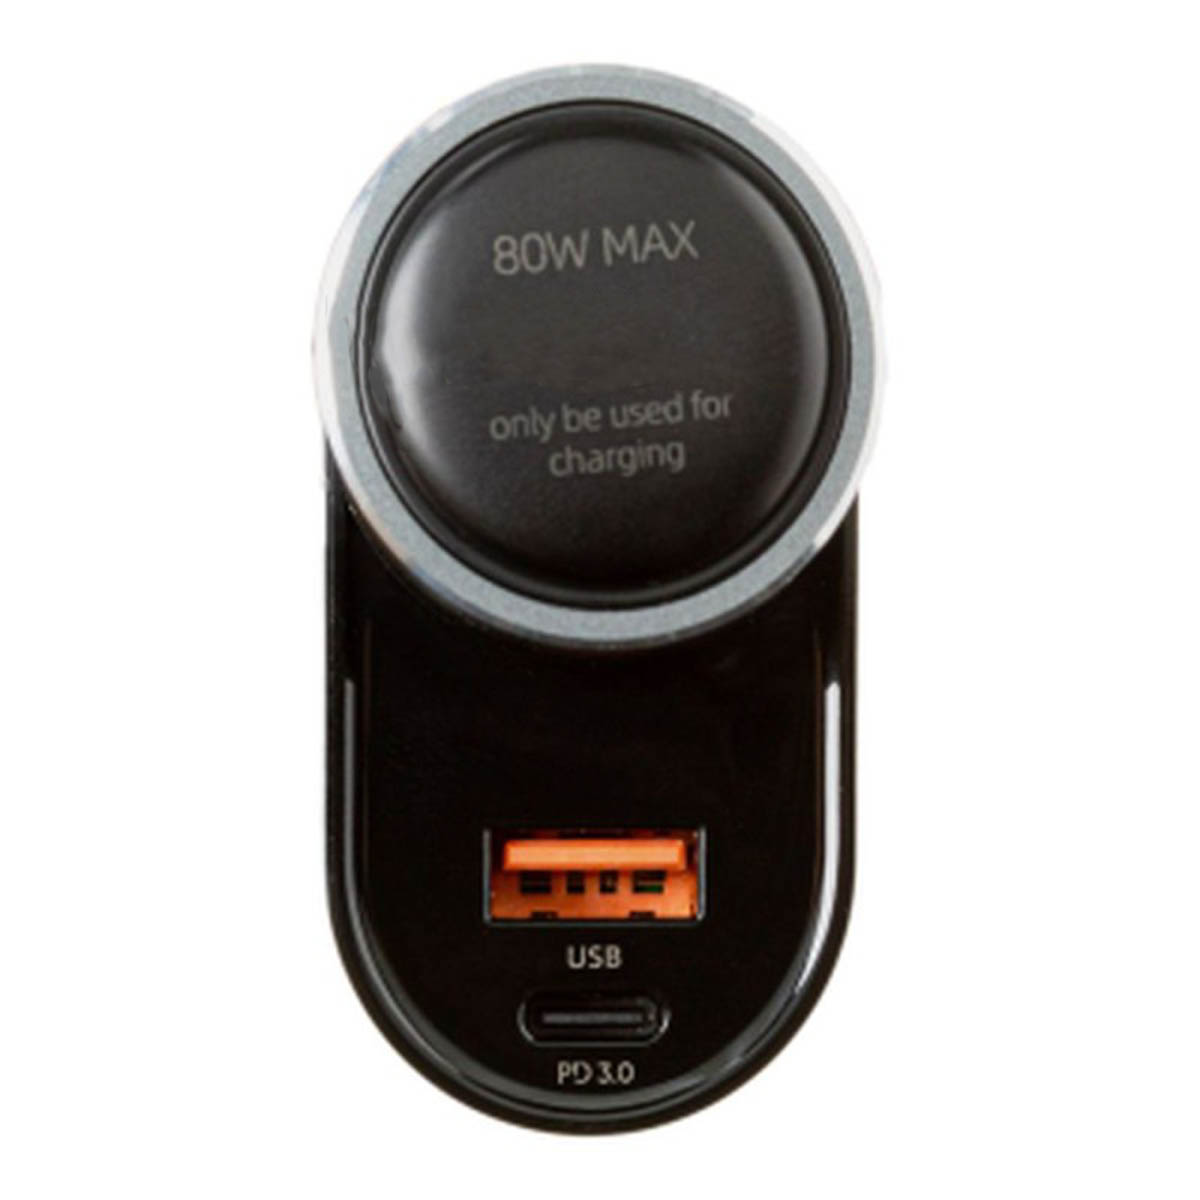 АЗУ (Автомобильное зарядное устройство) EARLDOM ET-CS3, 125W, 1 USB QC3.0, 1 USB Type C, 1 гнездо прикуривателя, цвет черный